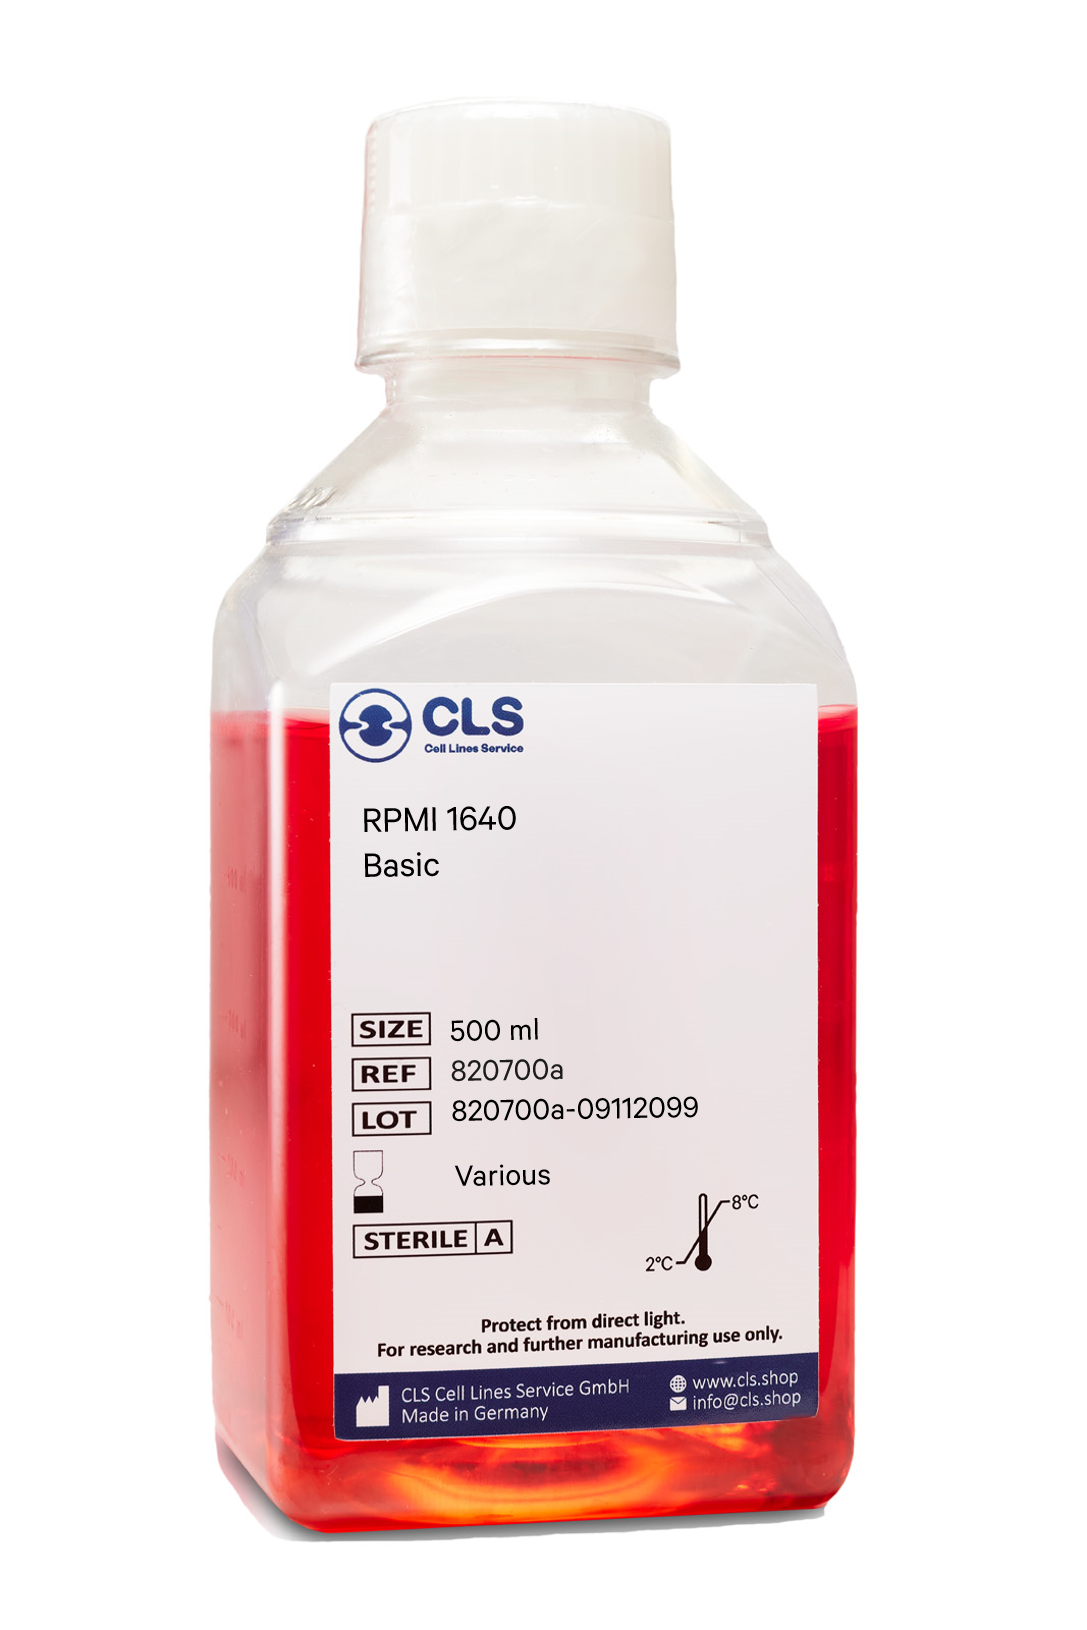 RPMI 1640, w: 4,5 g/L Glucose, w: 2 mM L-Glutamin, w: 10 mM HEPES, w: 1 mM Natriumpyruvat, w: 1,5 g/L NaHCO3